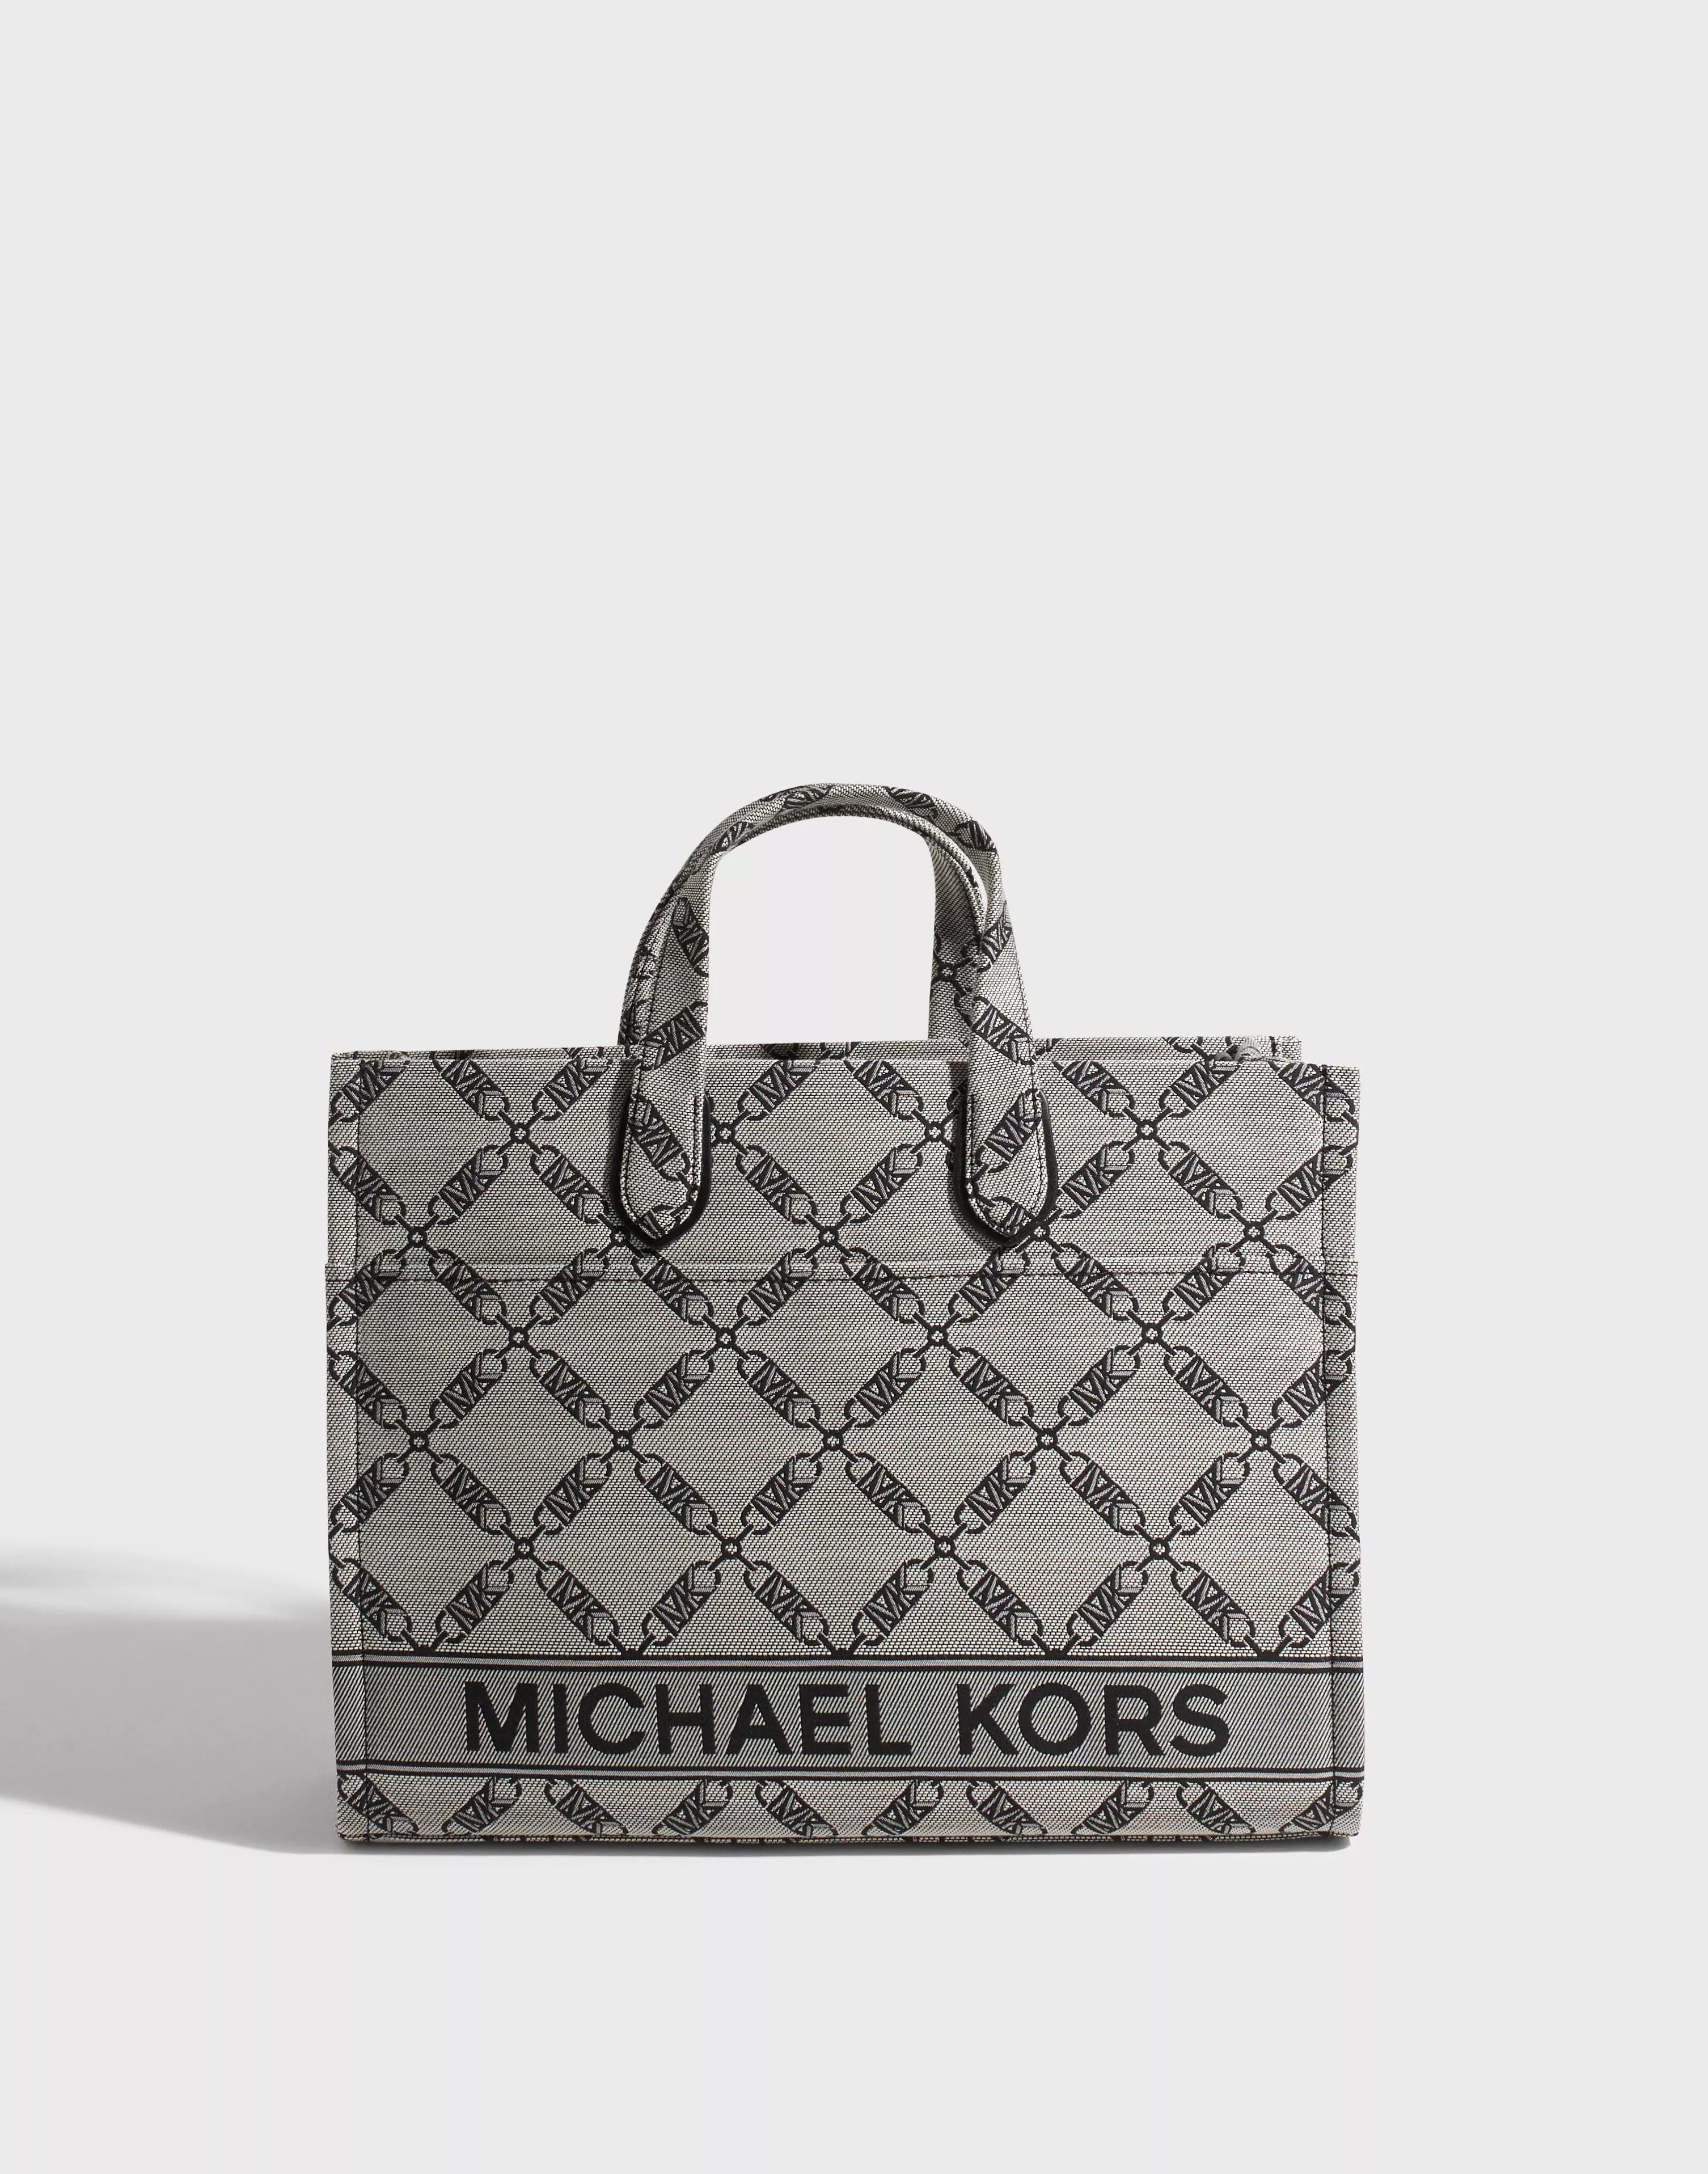 Michael Kors Women's Tote Bags